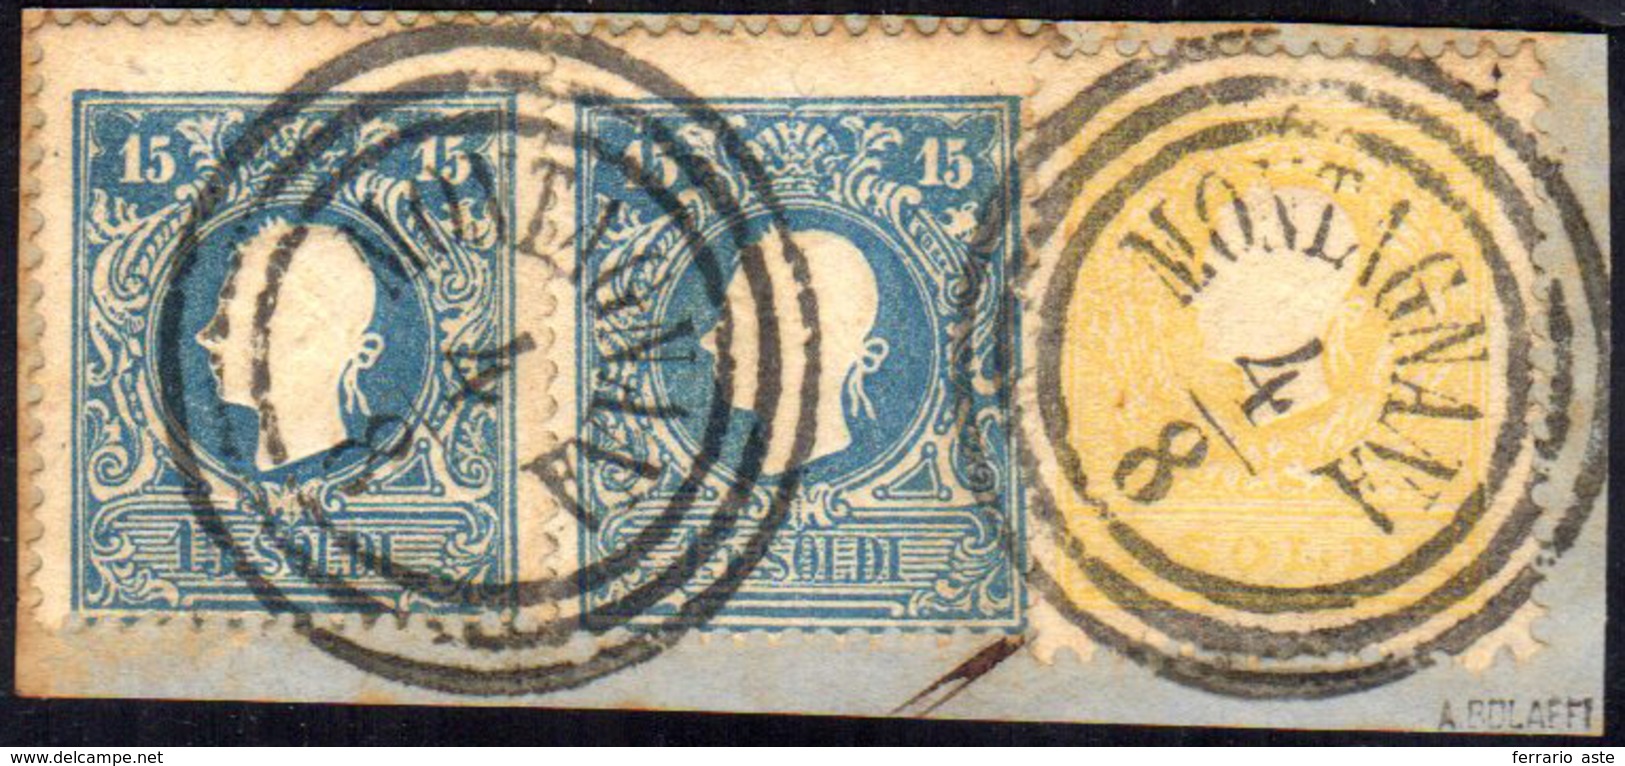 1859 - 2 Soldi Giallo, 15 Soldi Azzurro, Tutti II Tipo (28,32), Perfetti, Usati Su Piccolo Frammento... - Lombardy-Venetia